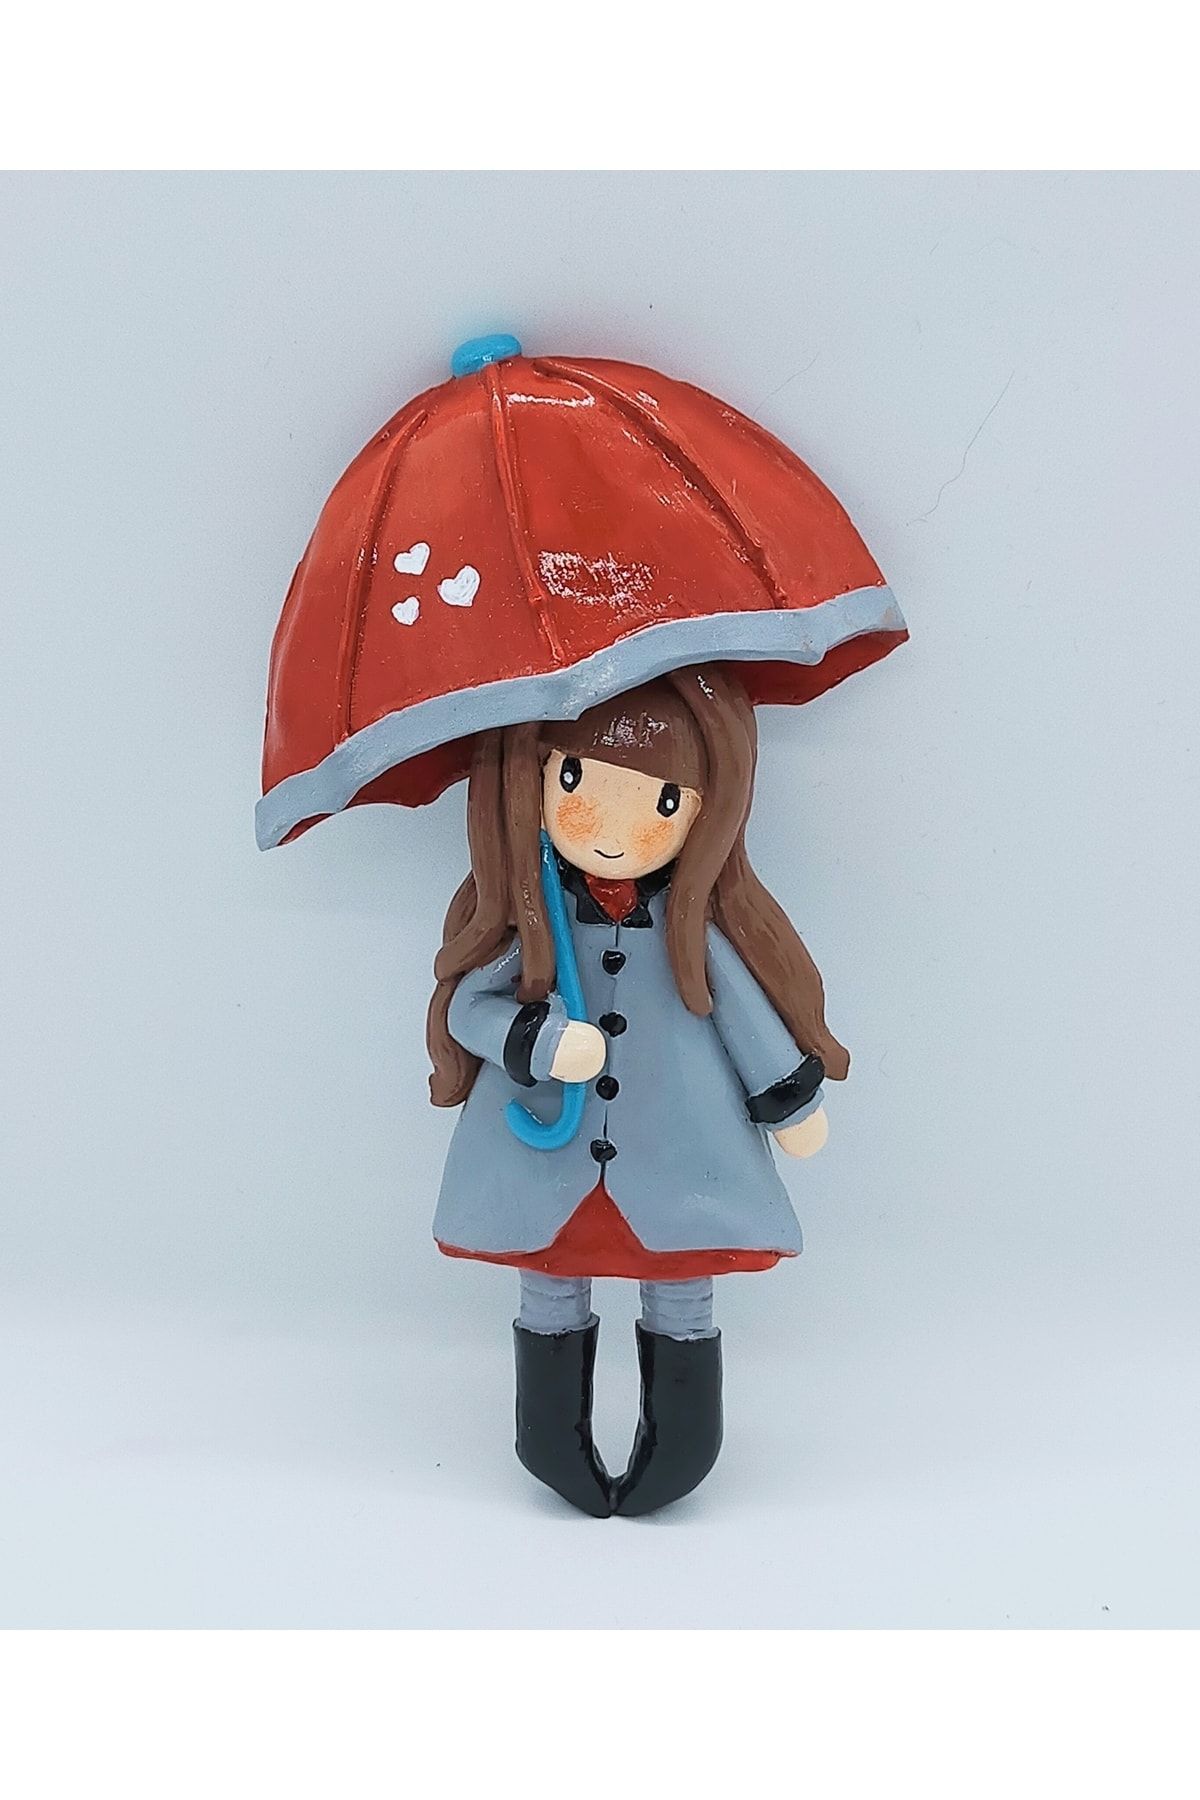 AYMEL DESİNG Magnet Şemsiyel Kız -15cm - Buzdolabı Susu